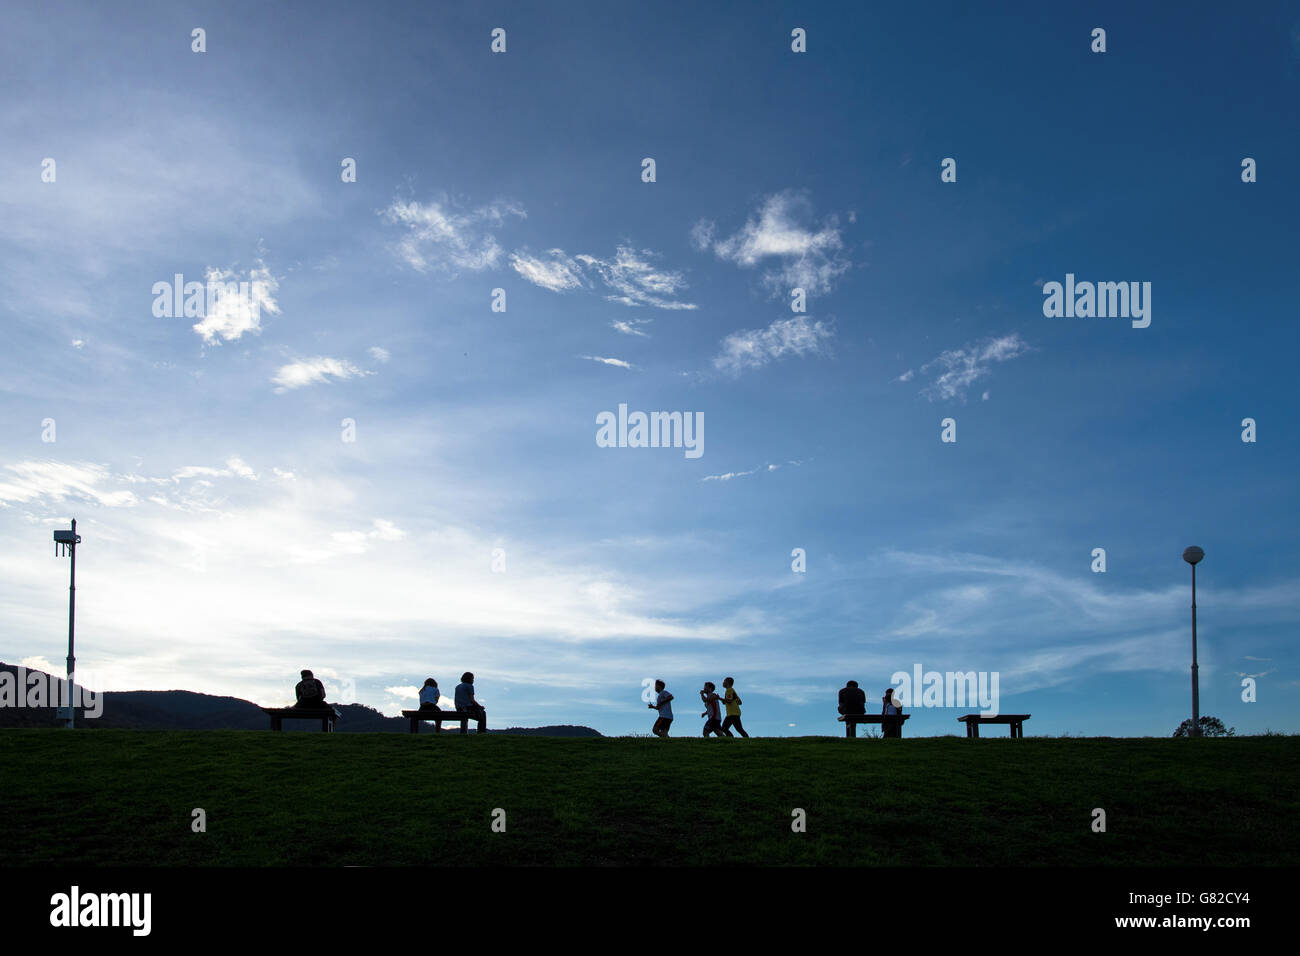 Silueta de personas en el parque con el cielo claro Foto de stock